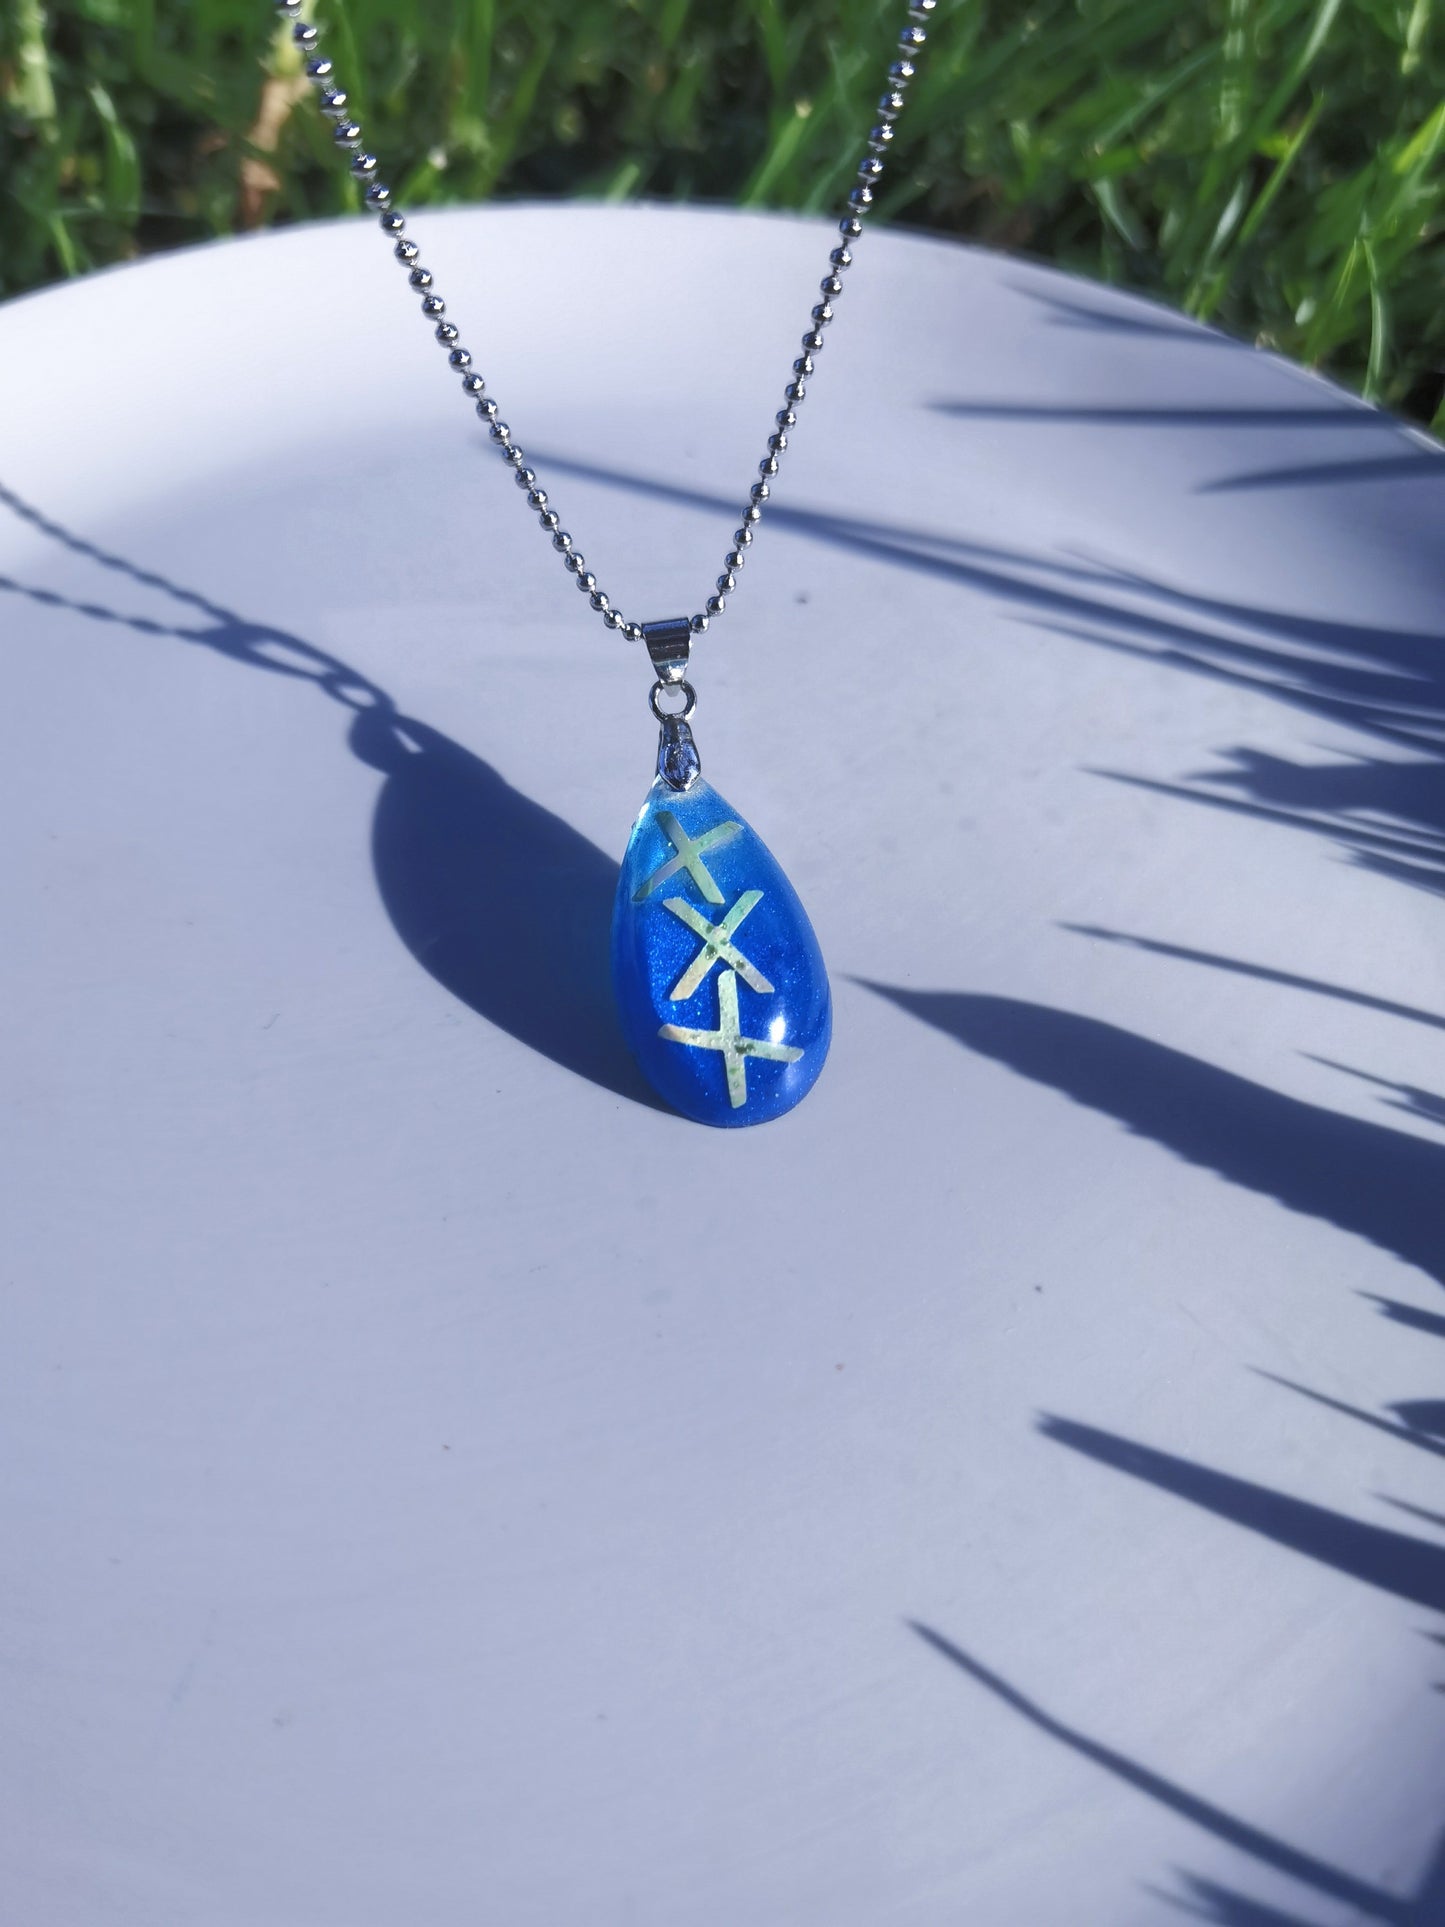 Blue teardrop pendant chain